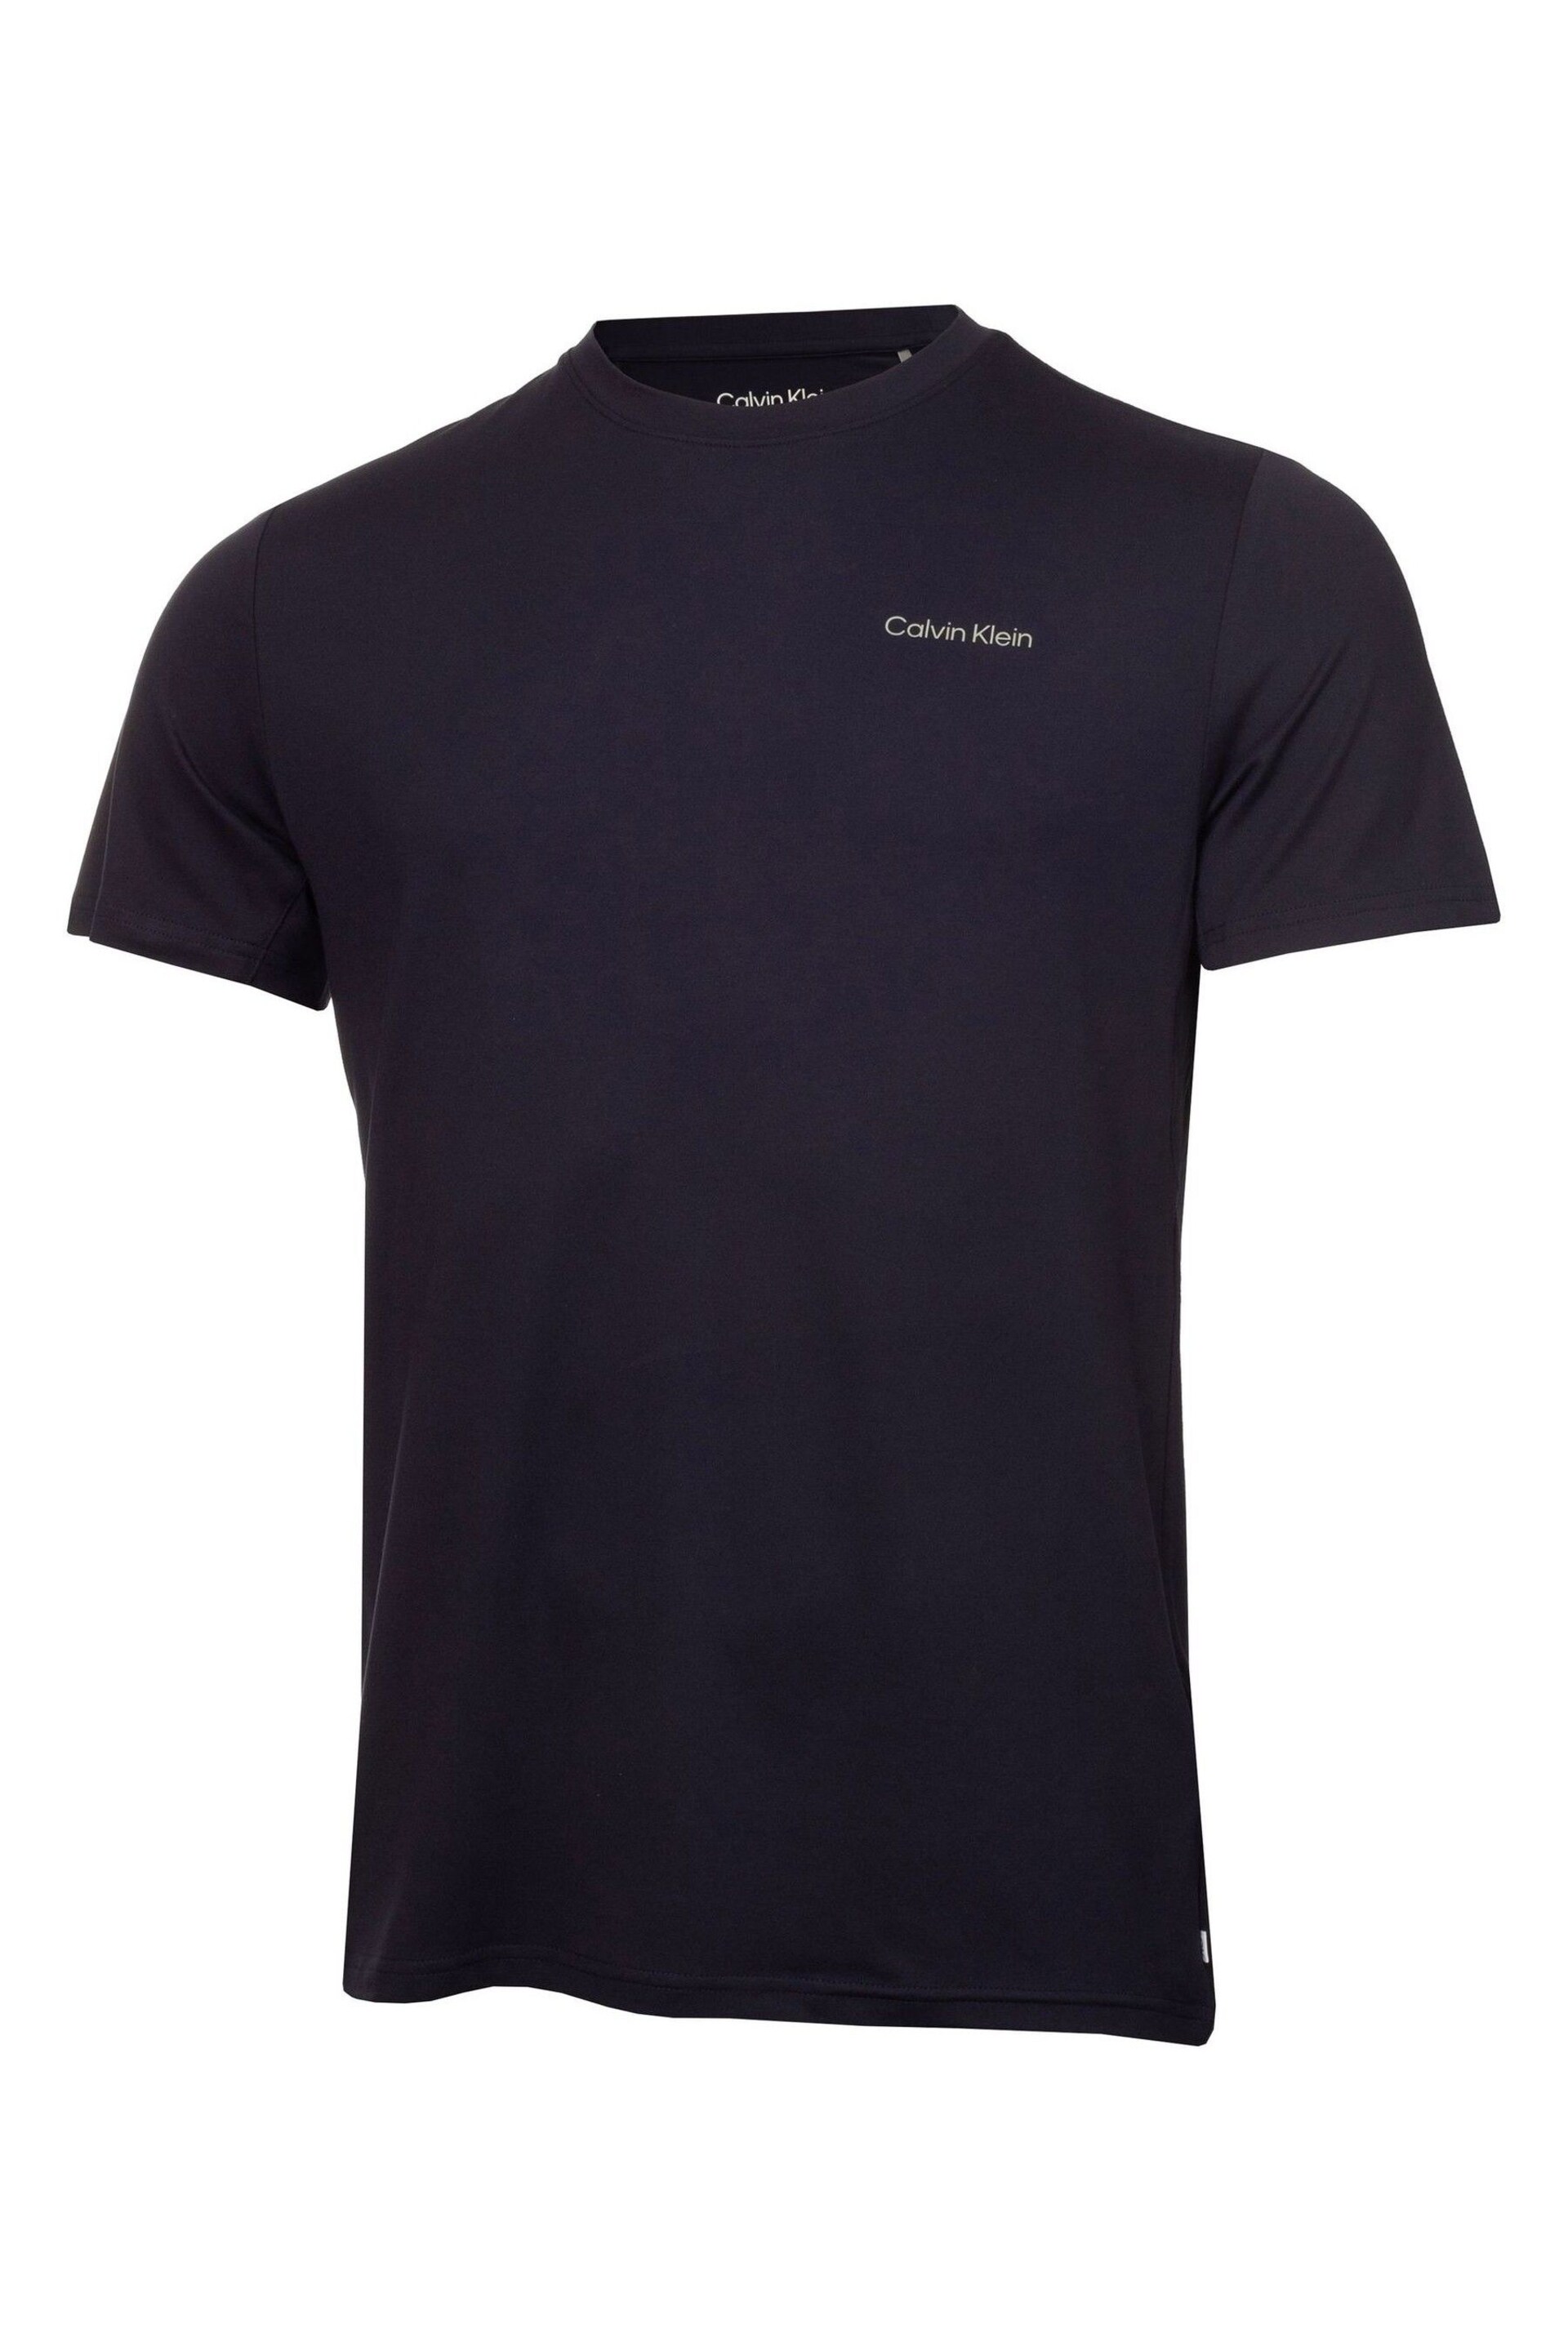 Calvin Klein Golf Tech T-Shirt 2 Pack - Image 5 of 8